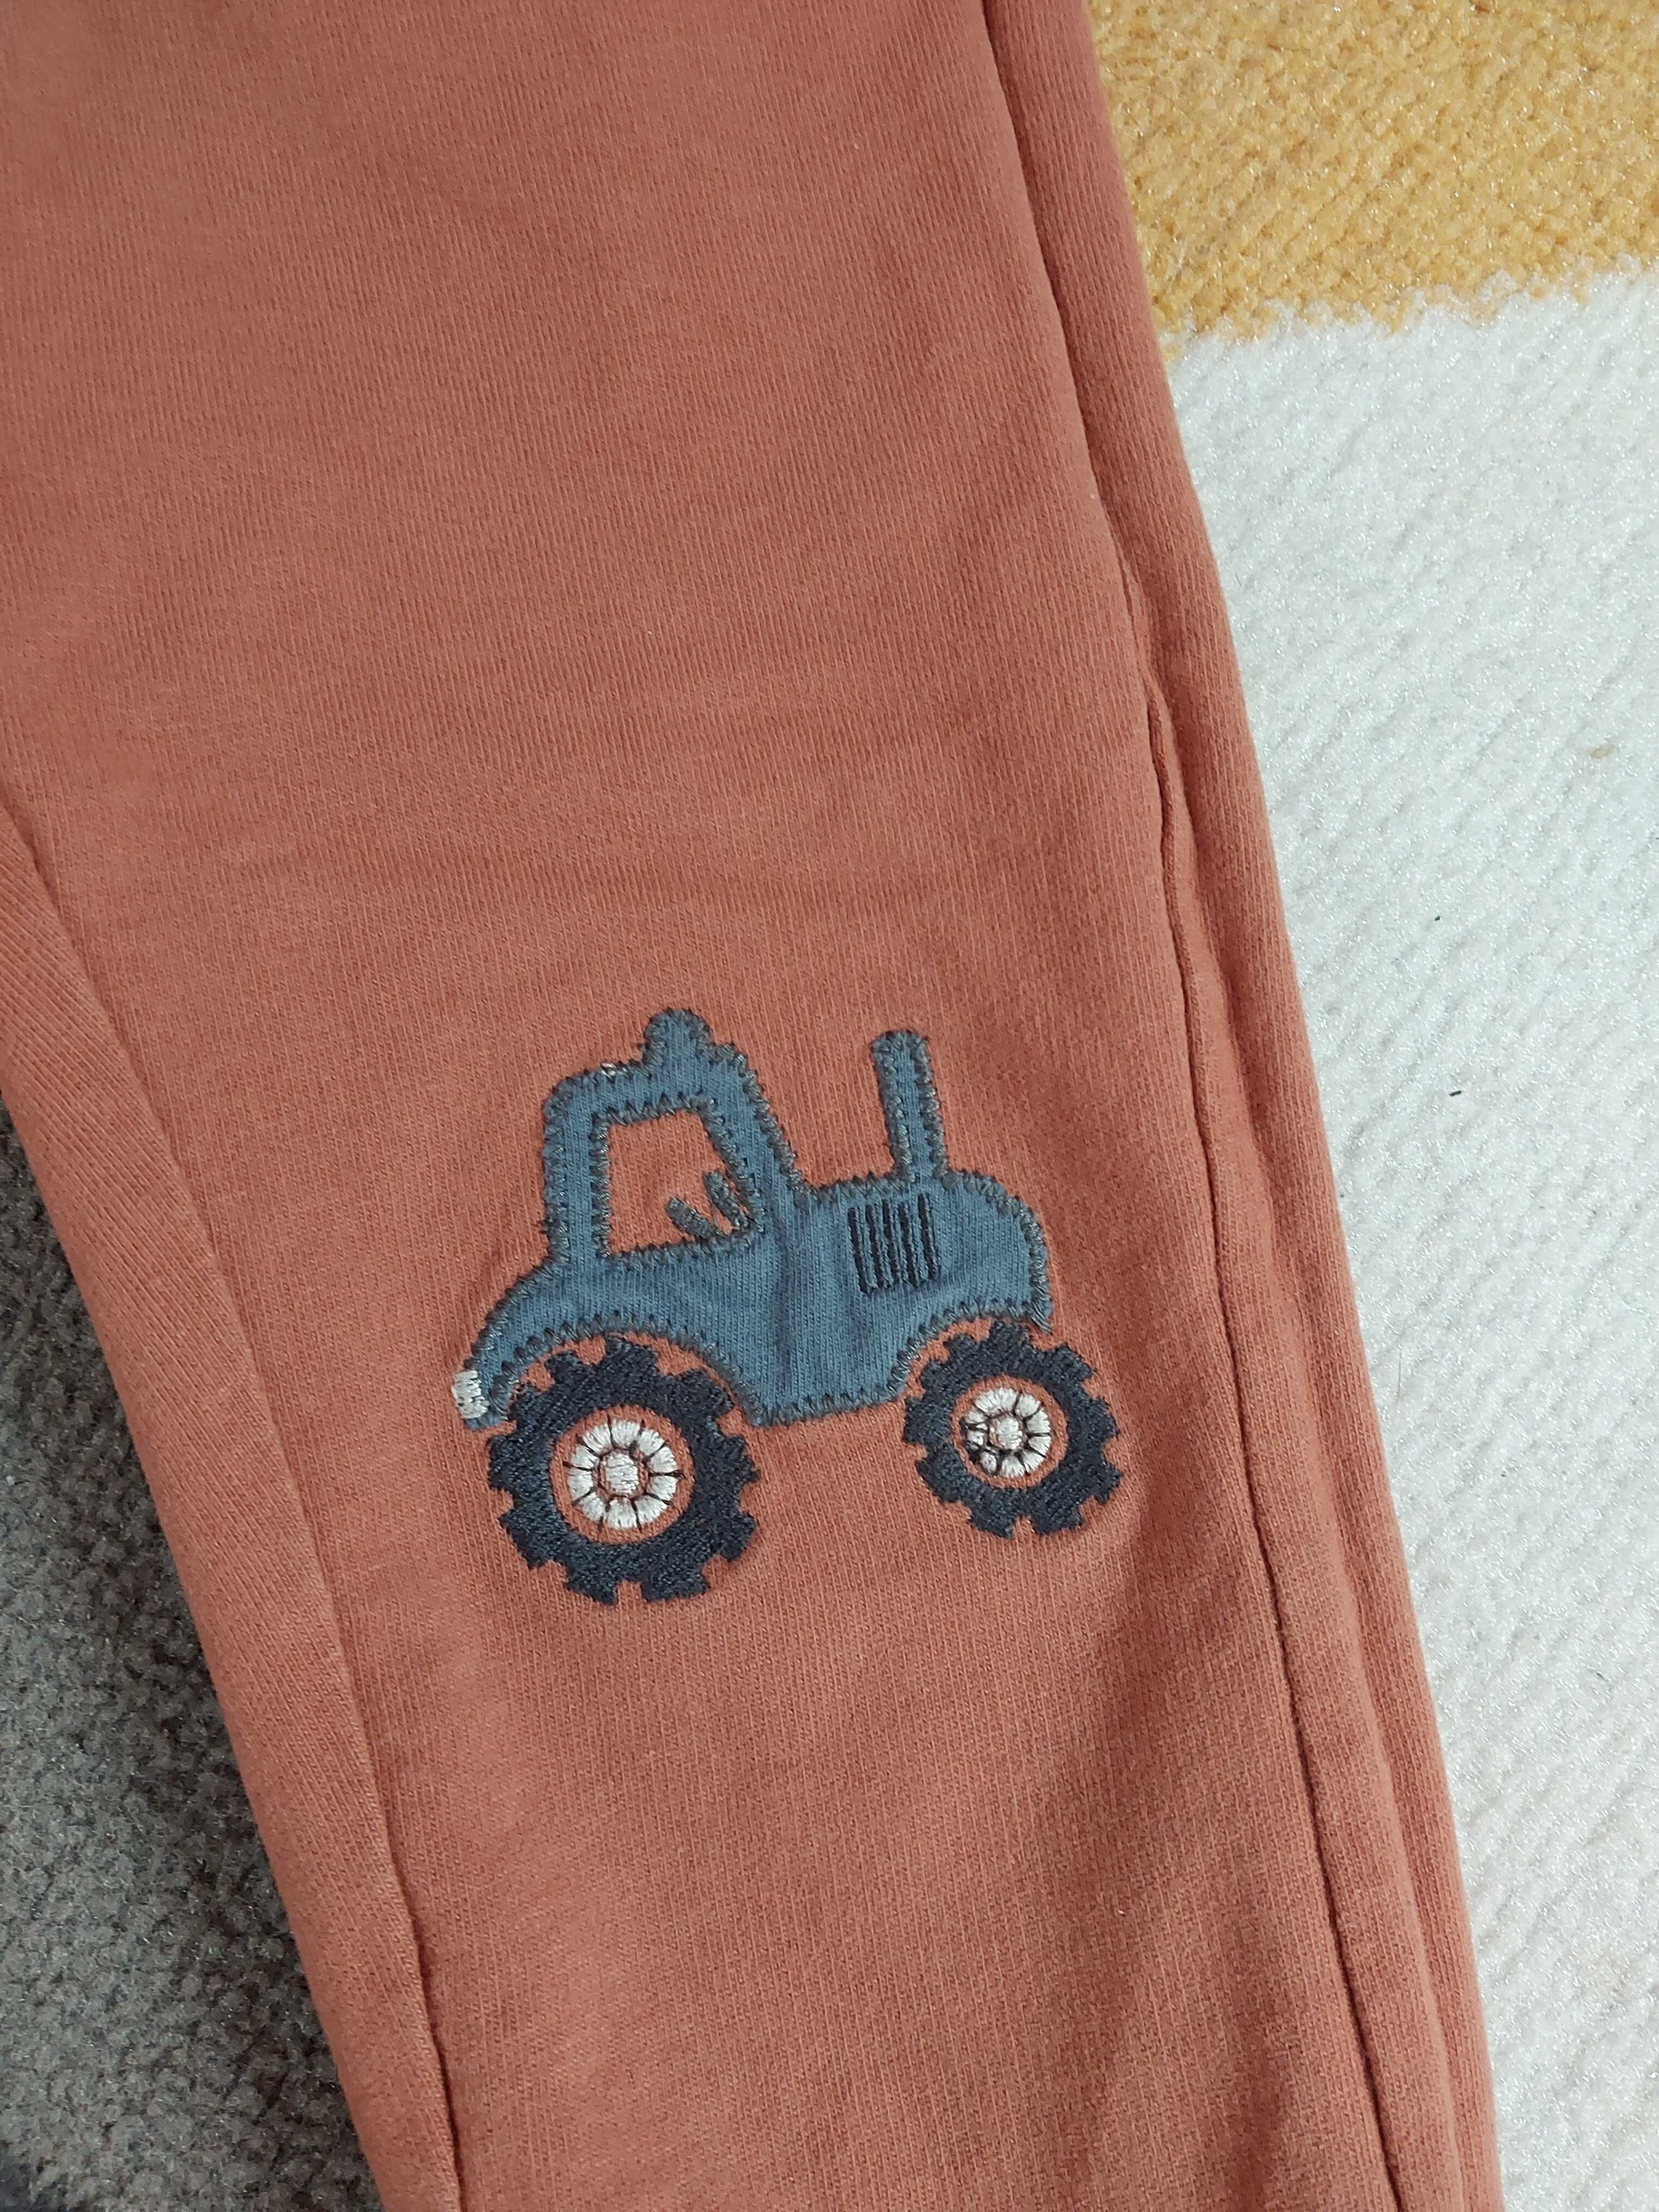 Spodnie smyk traktor dźwig j.nowe